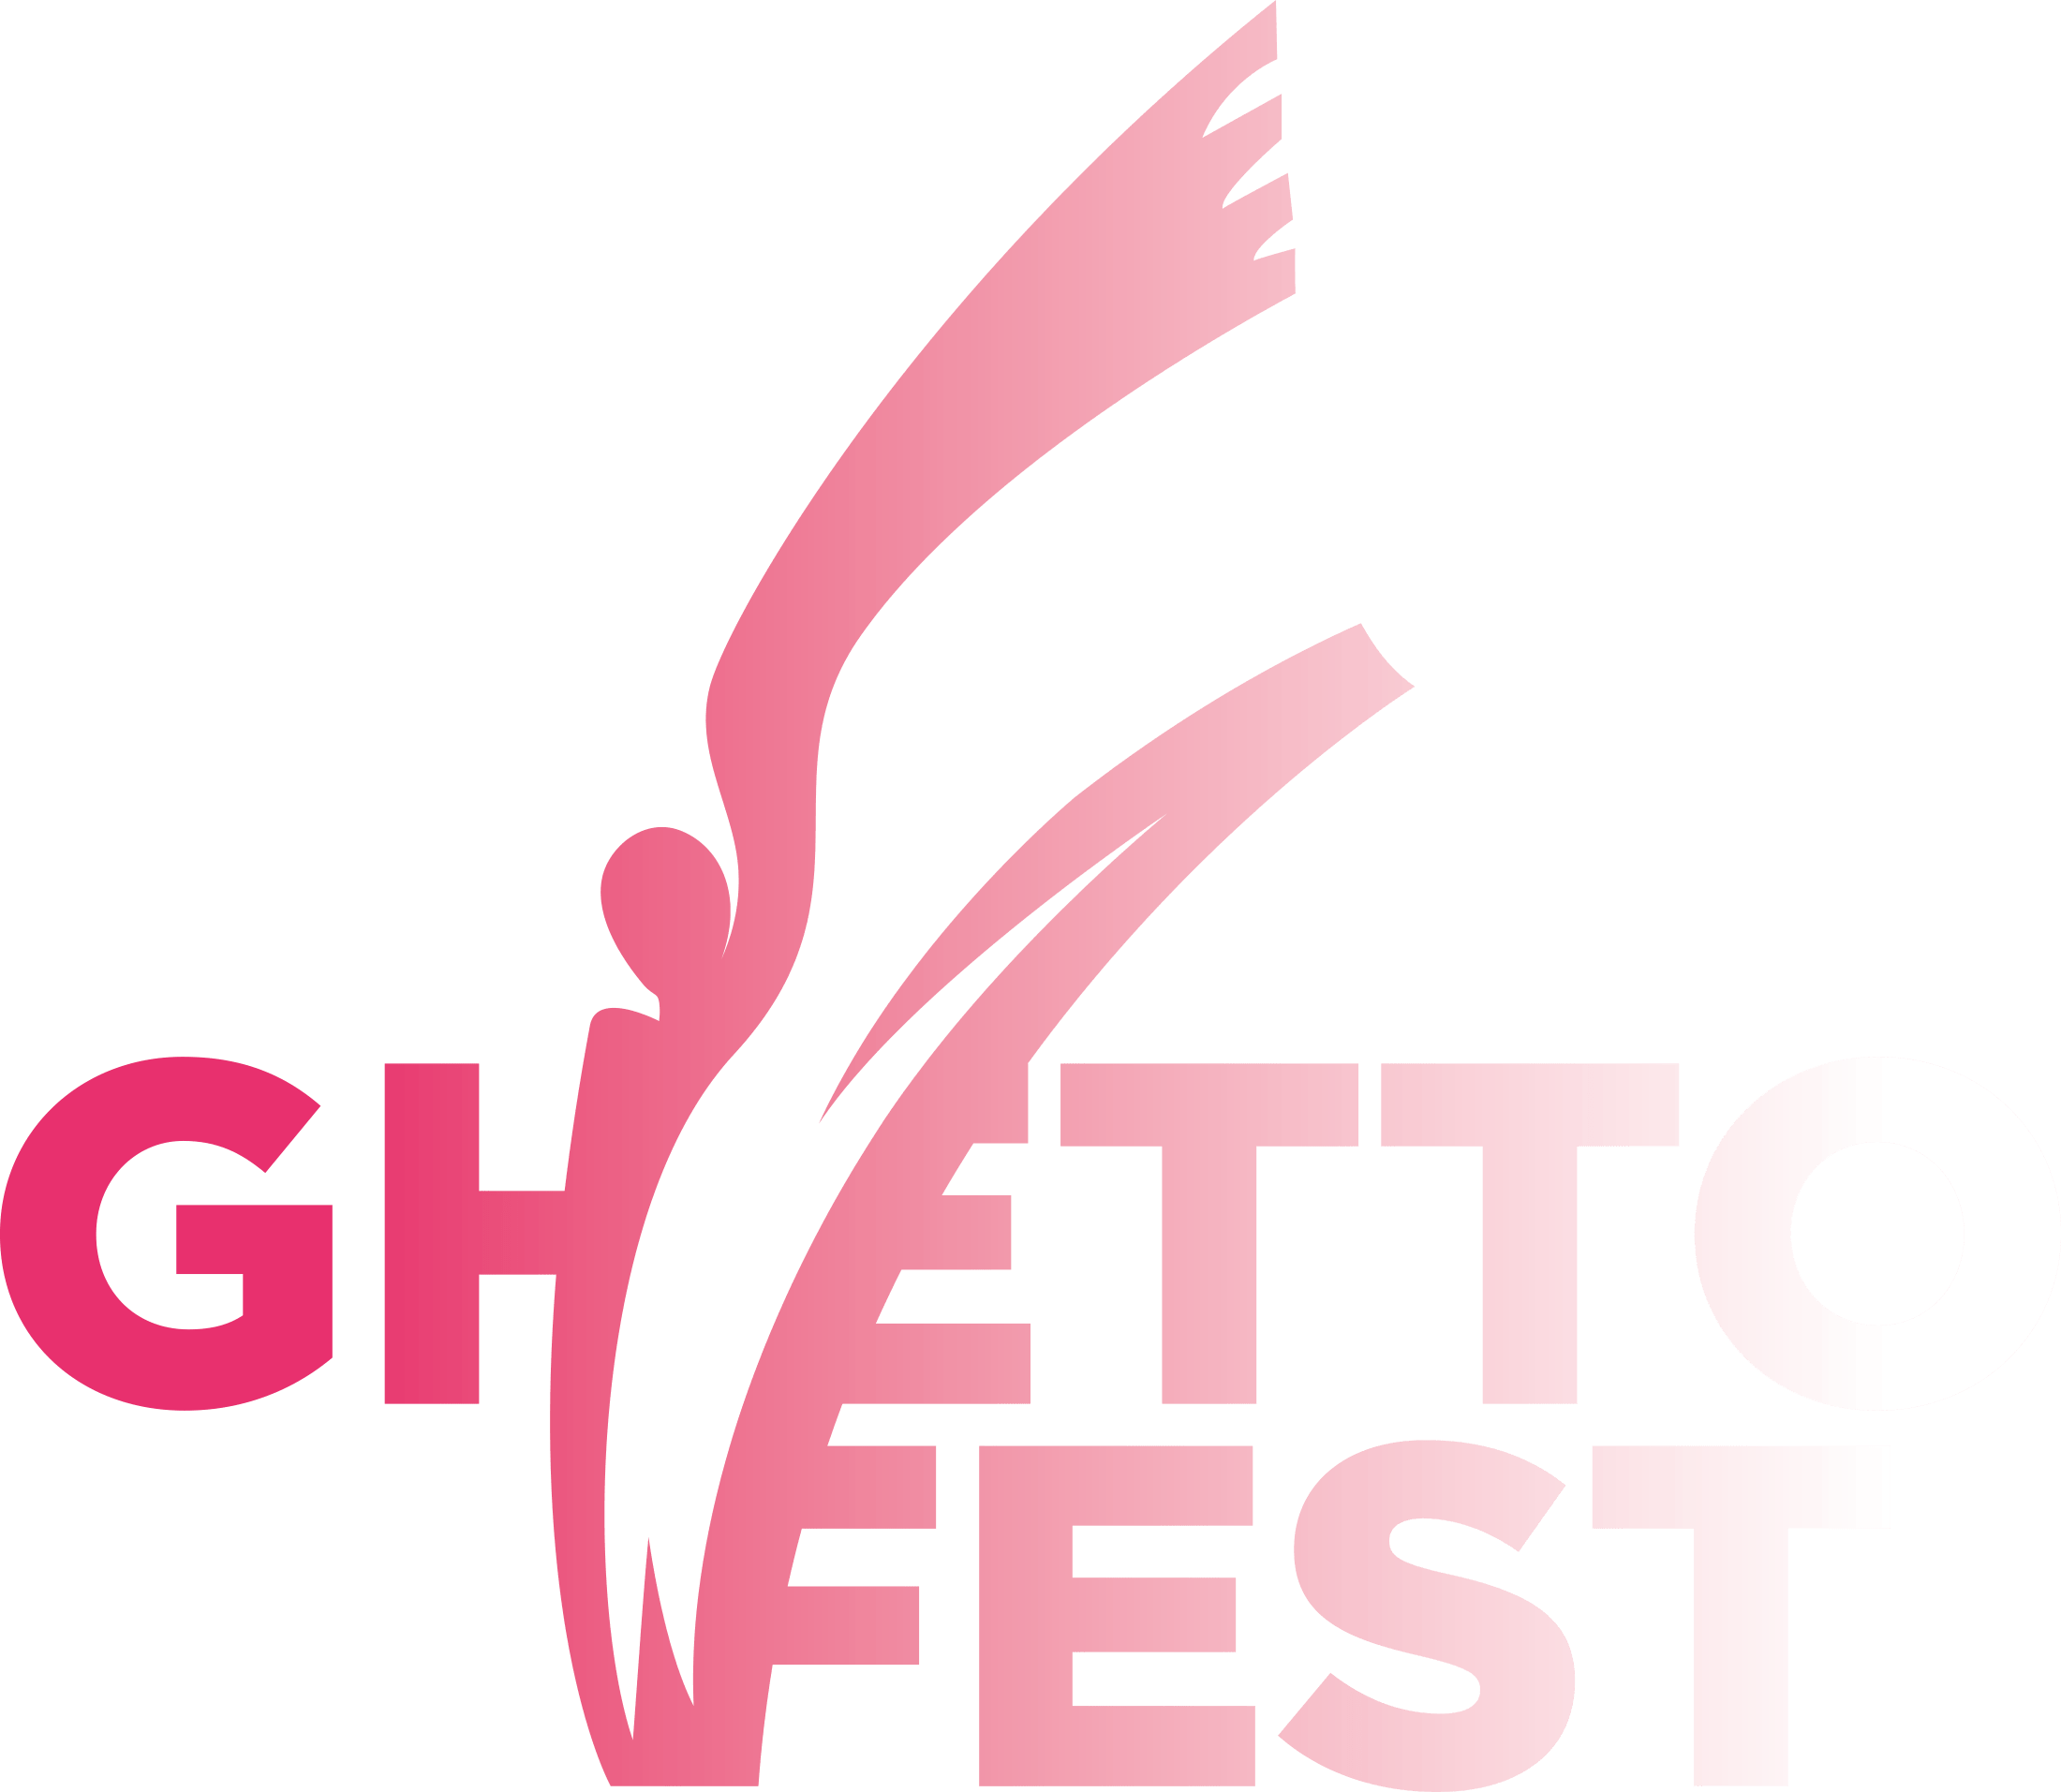 Ghettofest 2019